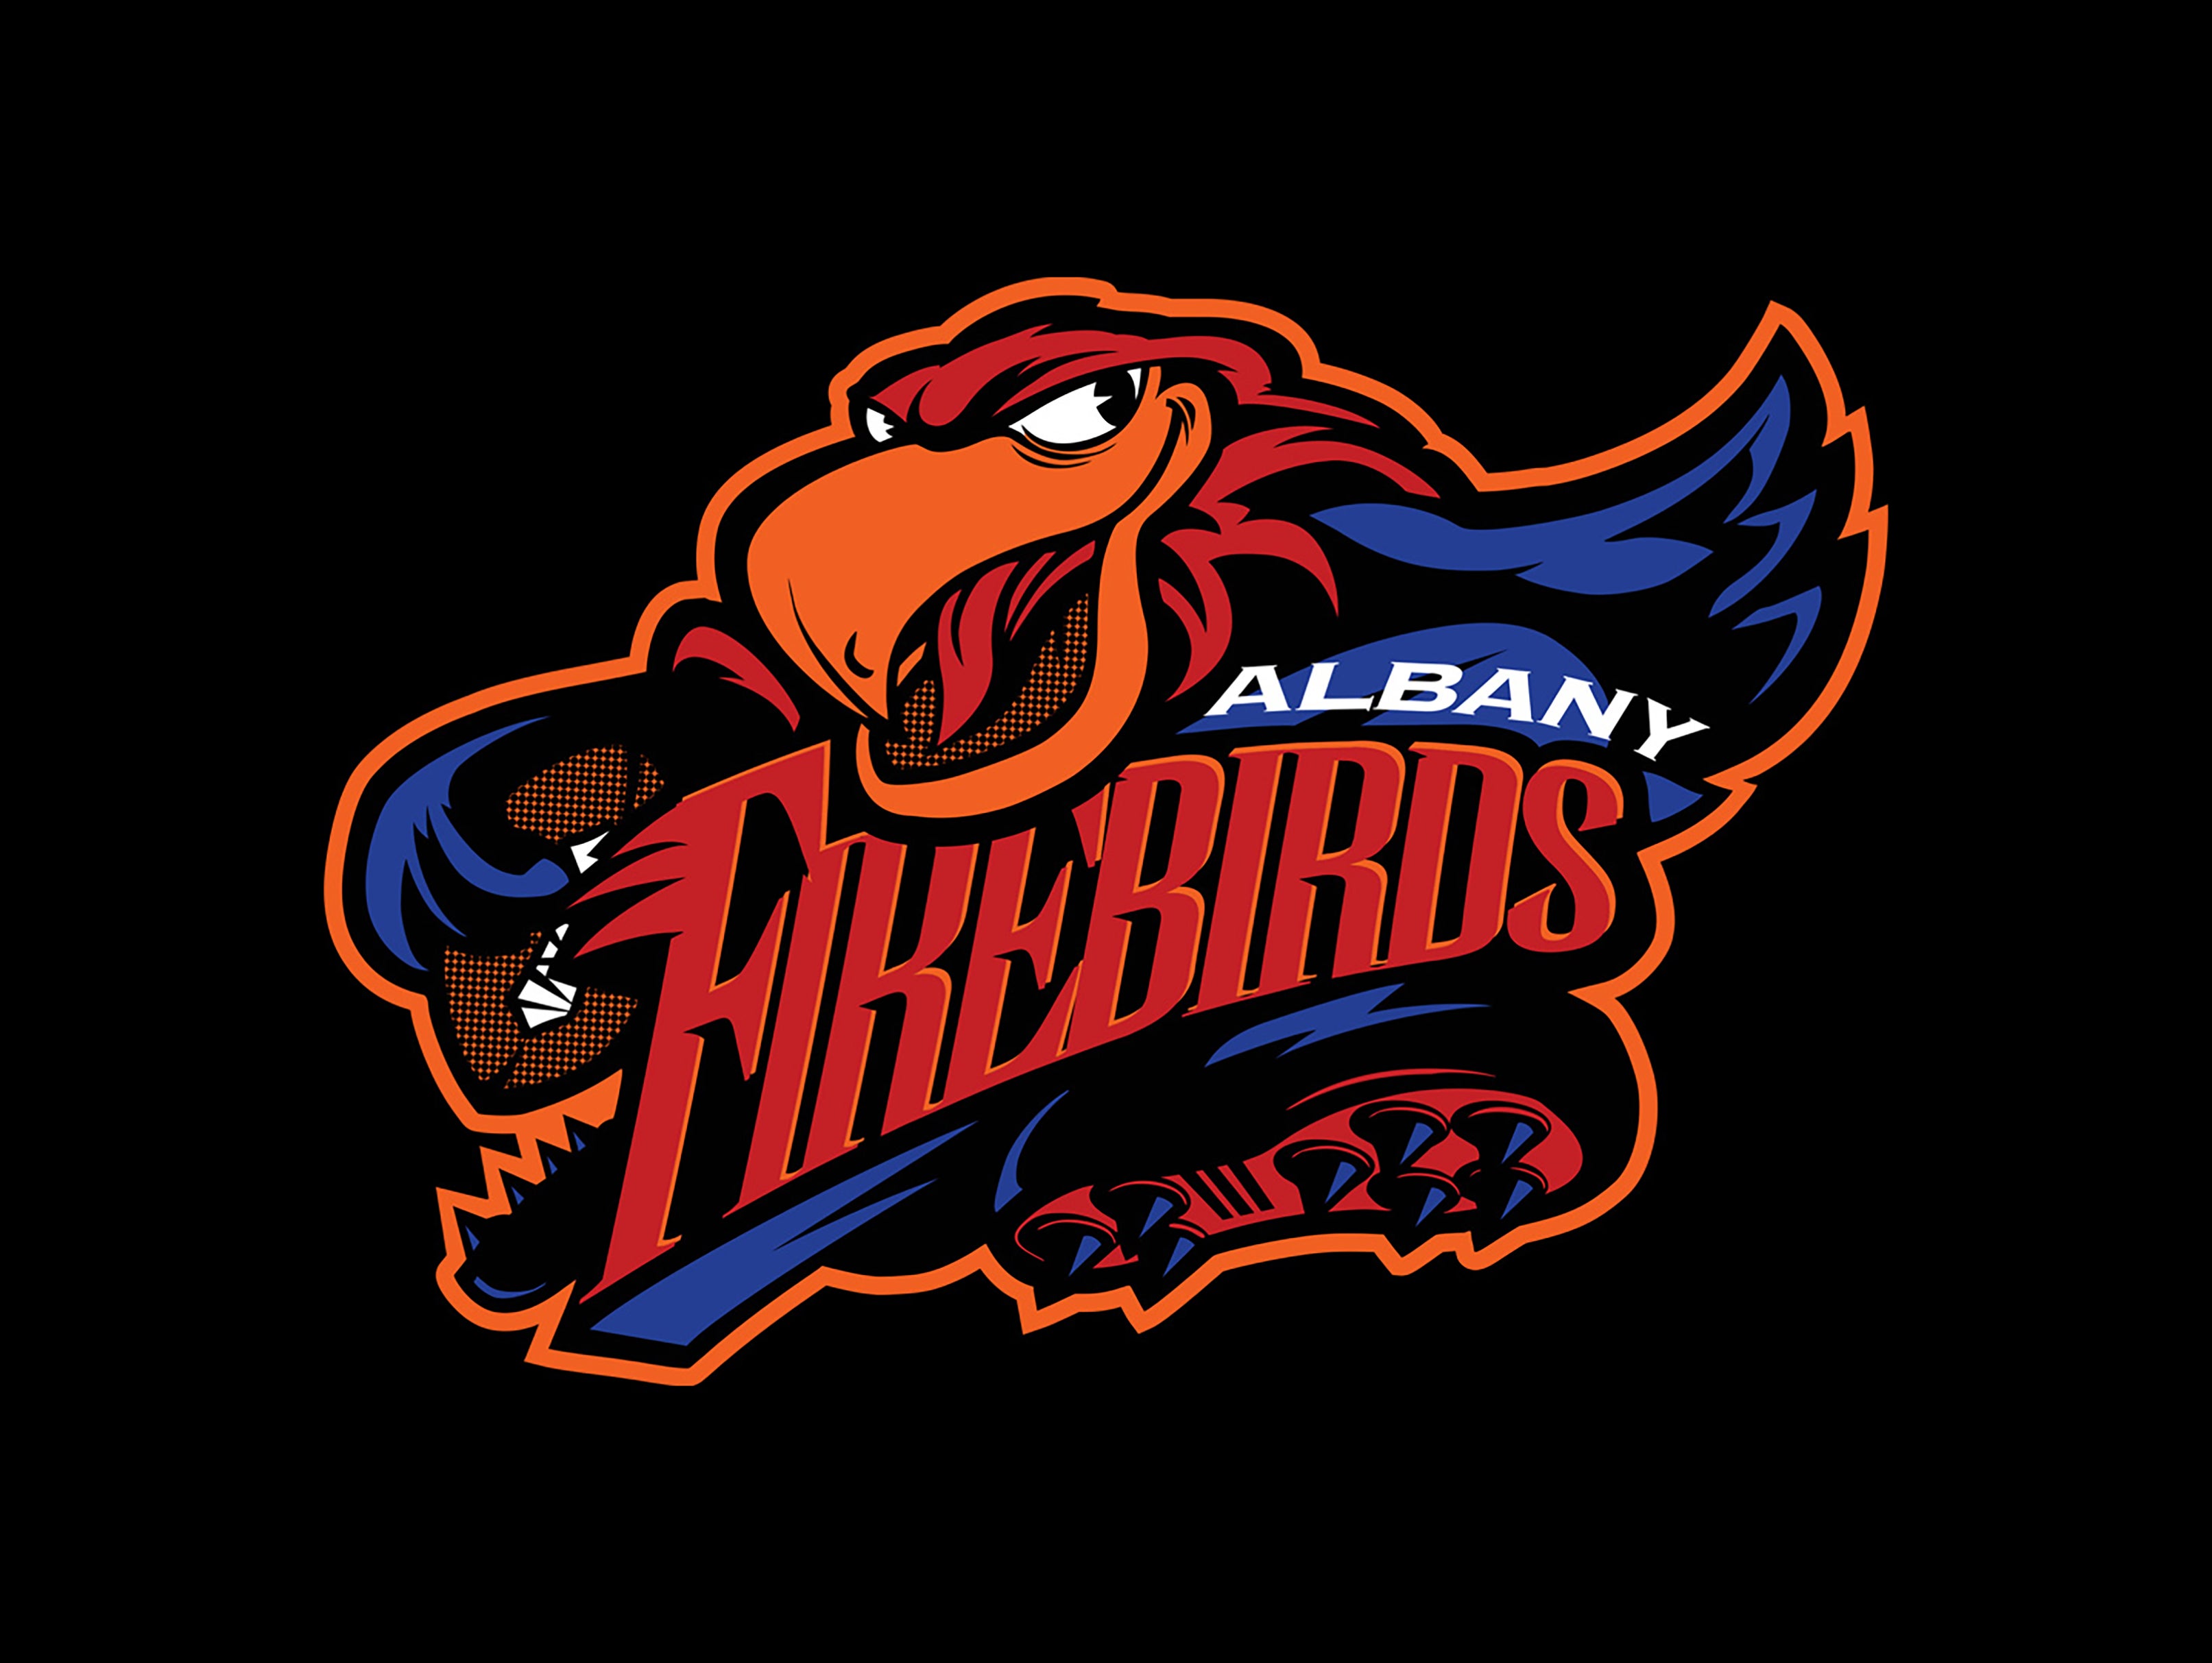 Albany Firebirds vs. Nashville Kats